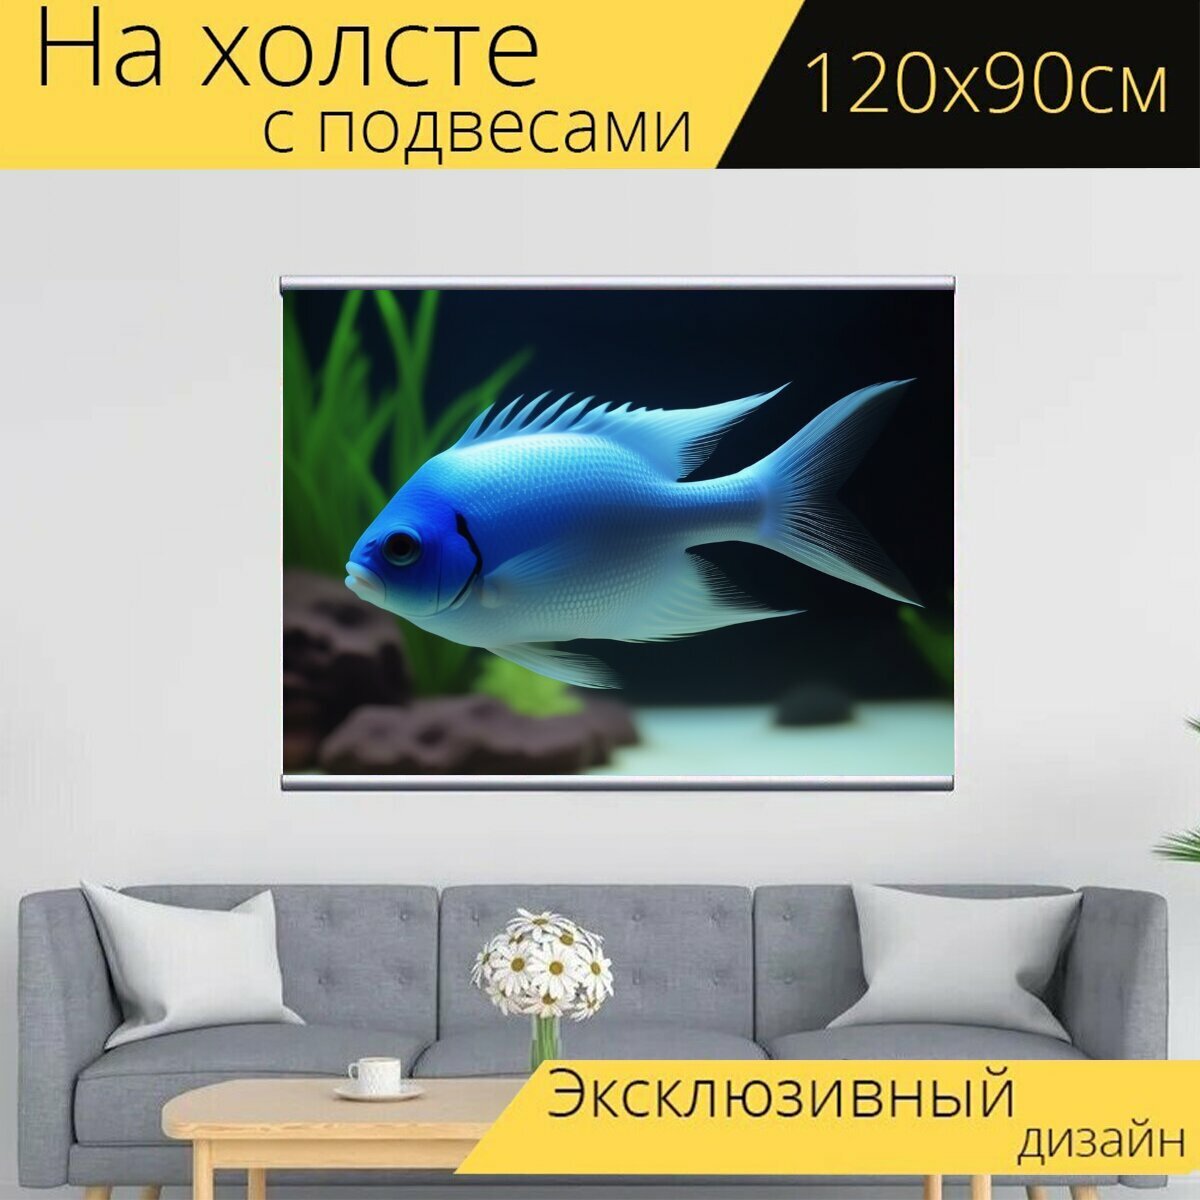 Картина на холсте любителям природы "Животные, аквариумные рыбки, в аквариуме" с подвесами 120х90 см. для интерьера на стену